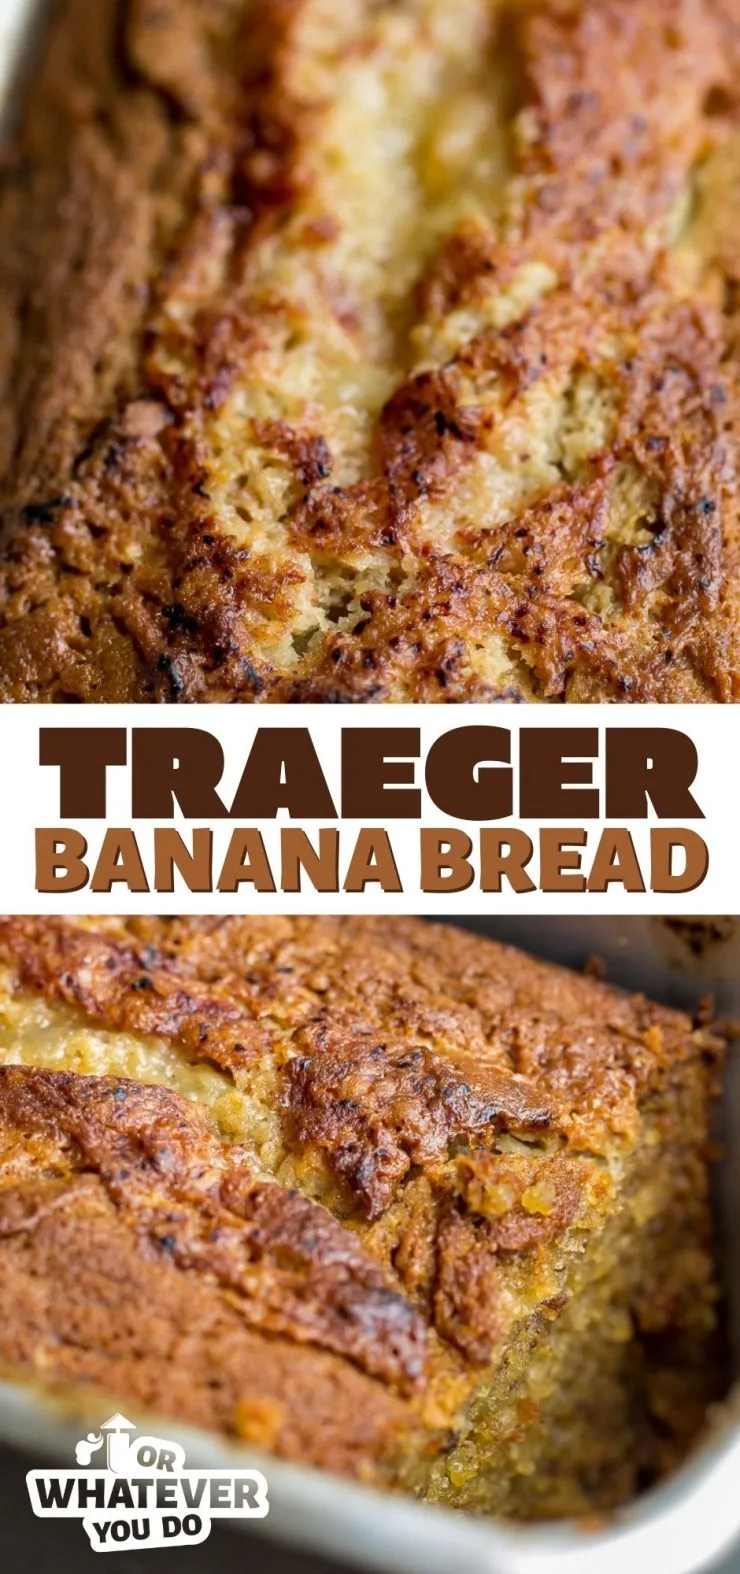 Traeger Banana Bread